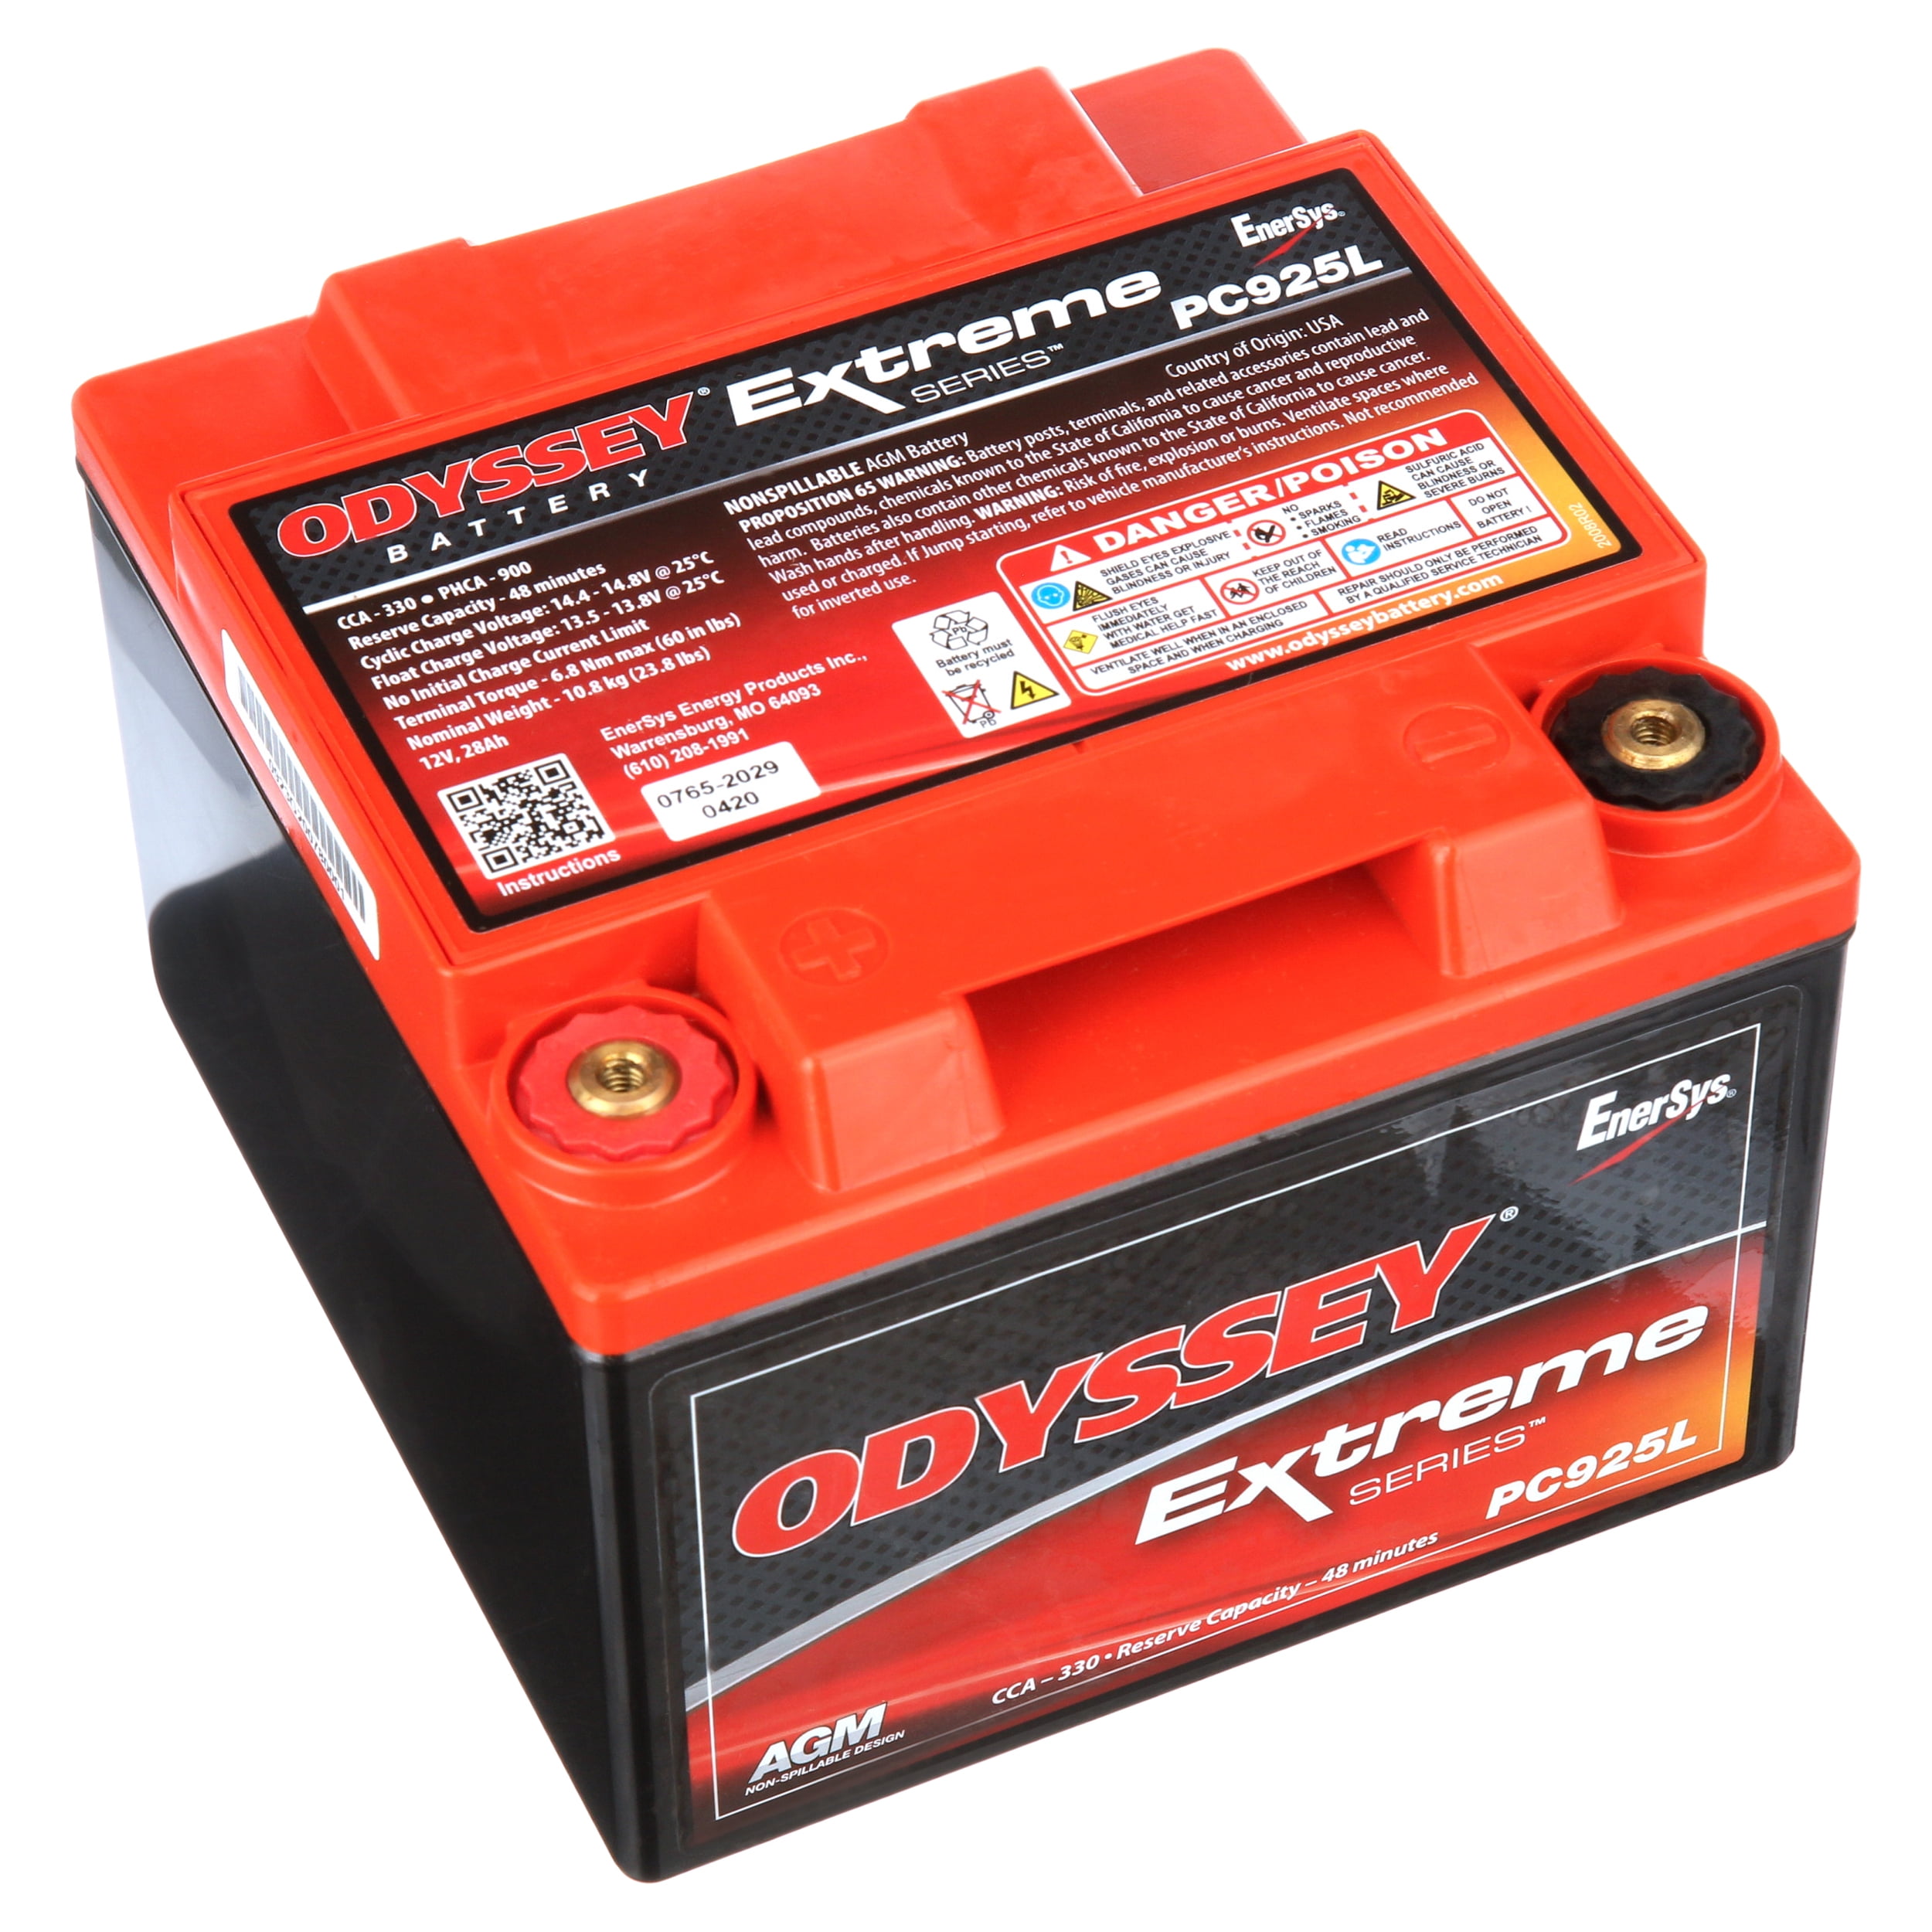 Odyssey Battery PC925L Automotive Battery 